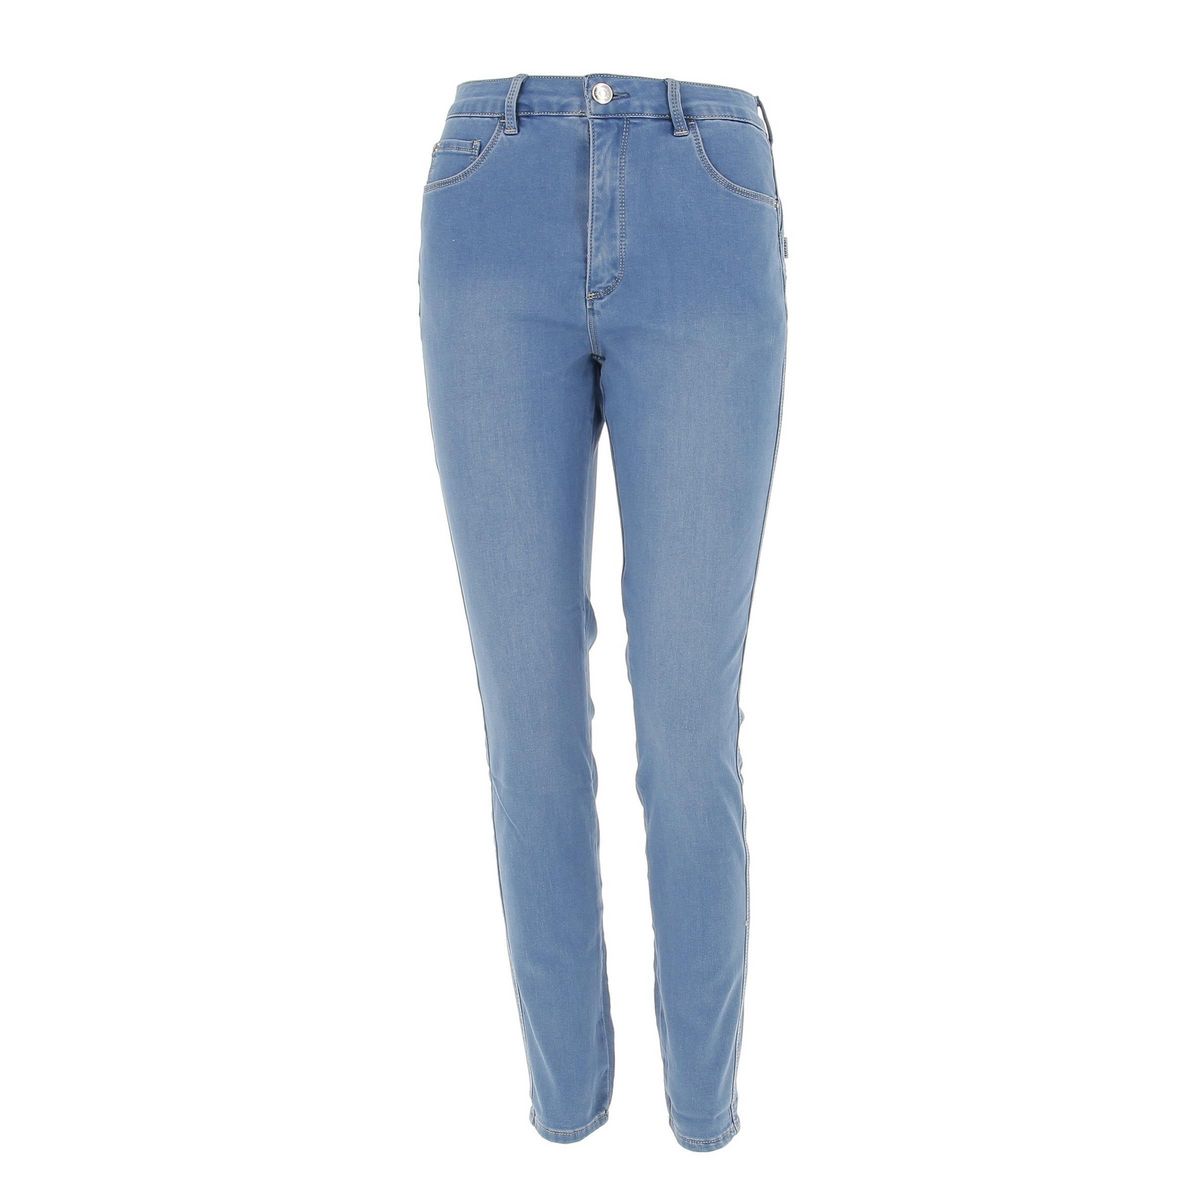 Tiffosi Pantalon jeans Tiffosi Jeans push up 193 blue  7-693